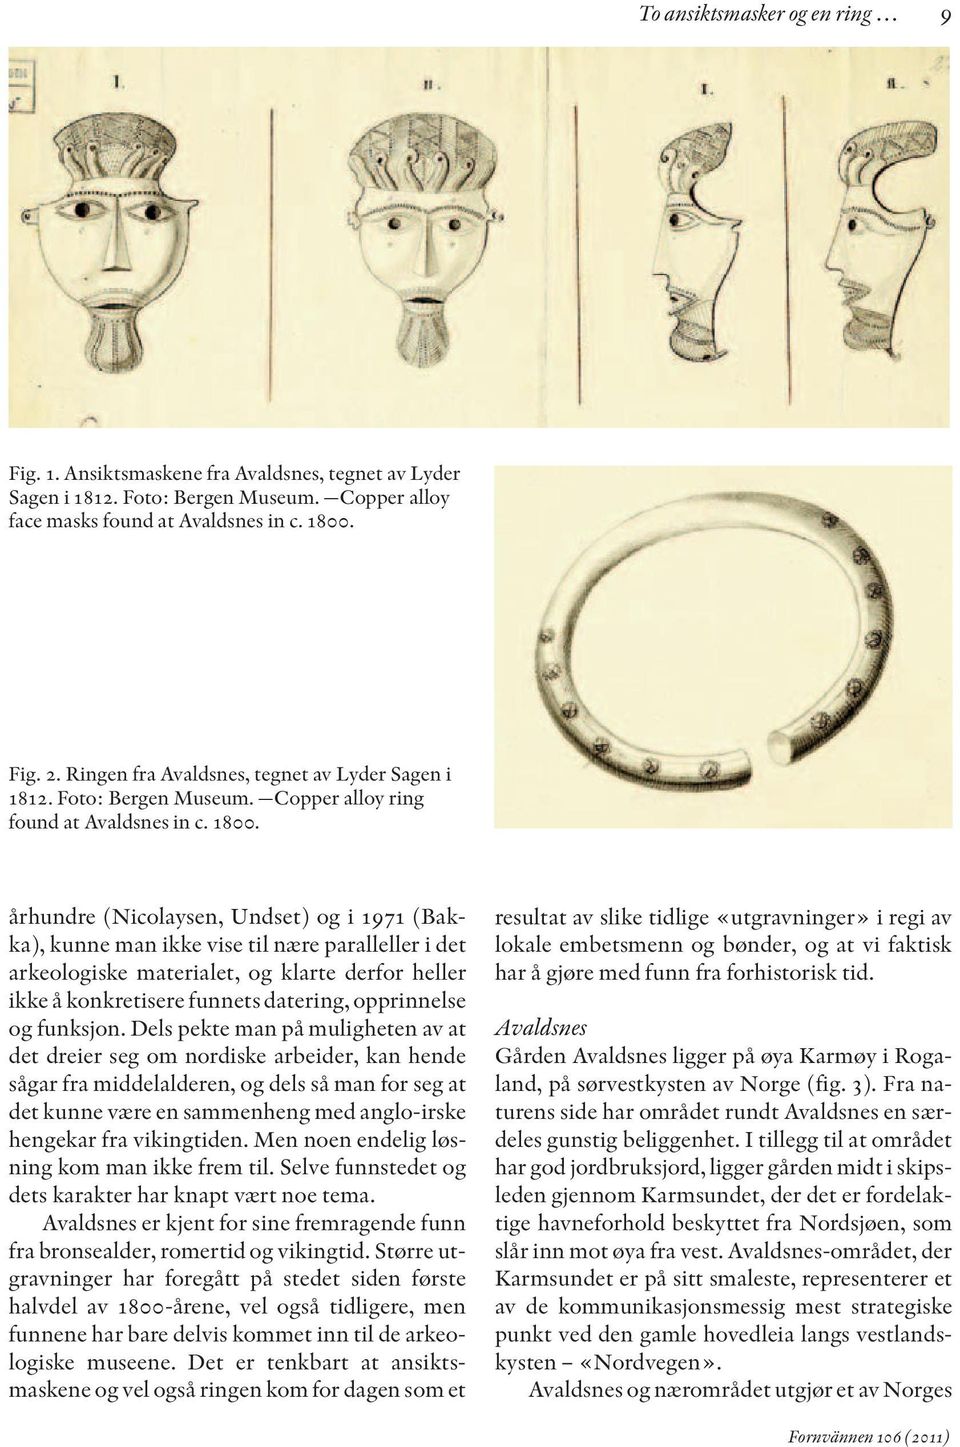 århundre (Nicolaysen, Undset) og i 1971 (Bakka), kunne man ikke vise til nære paralleller i det arkeologiske materialet, og klarte derfor heller ikke å konkretisere funnets datering, opprinnelse og